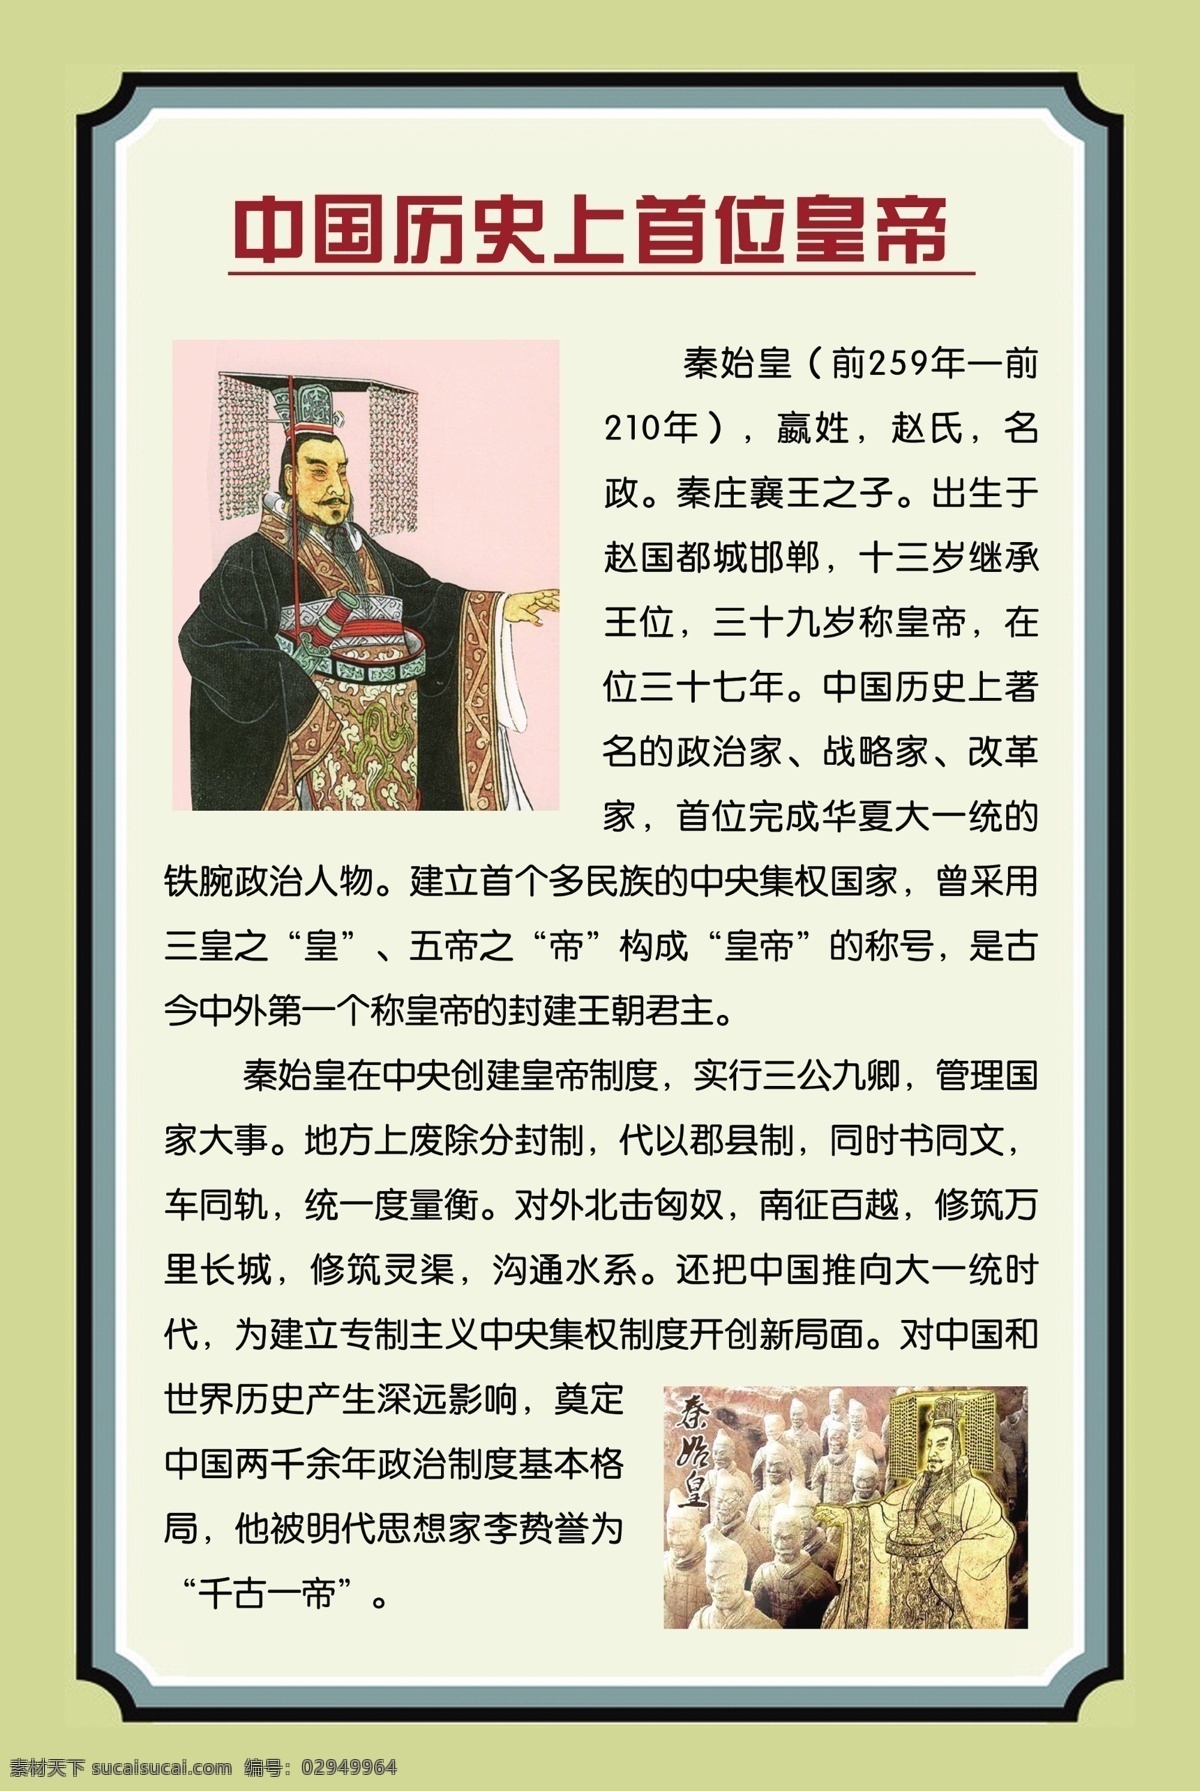 伟人海报 首位皇帝 千古一帝 三十七年 中国历史上 十三岁